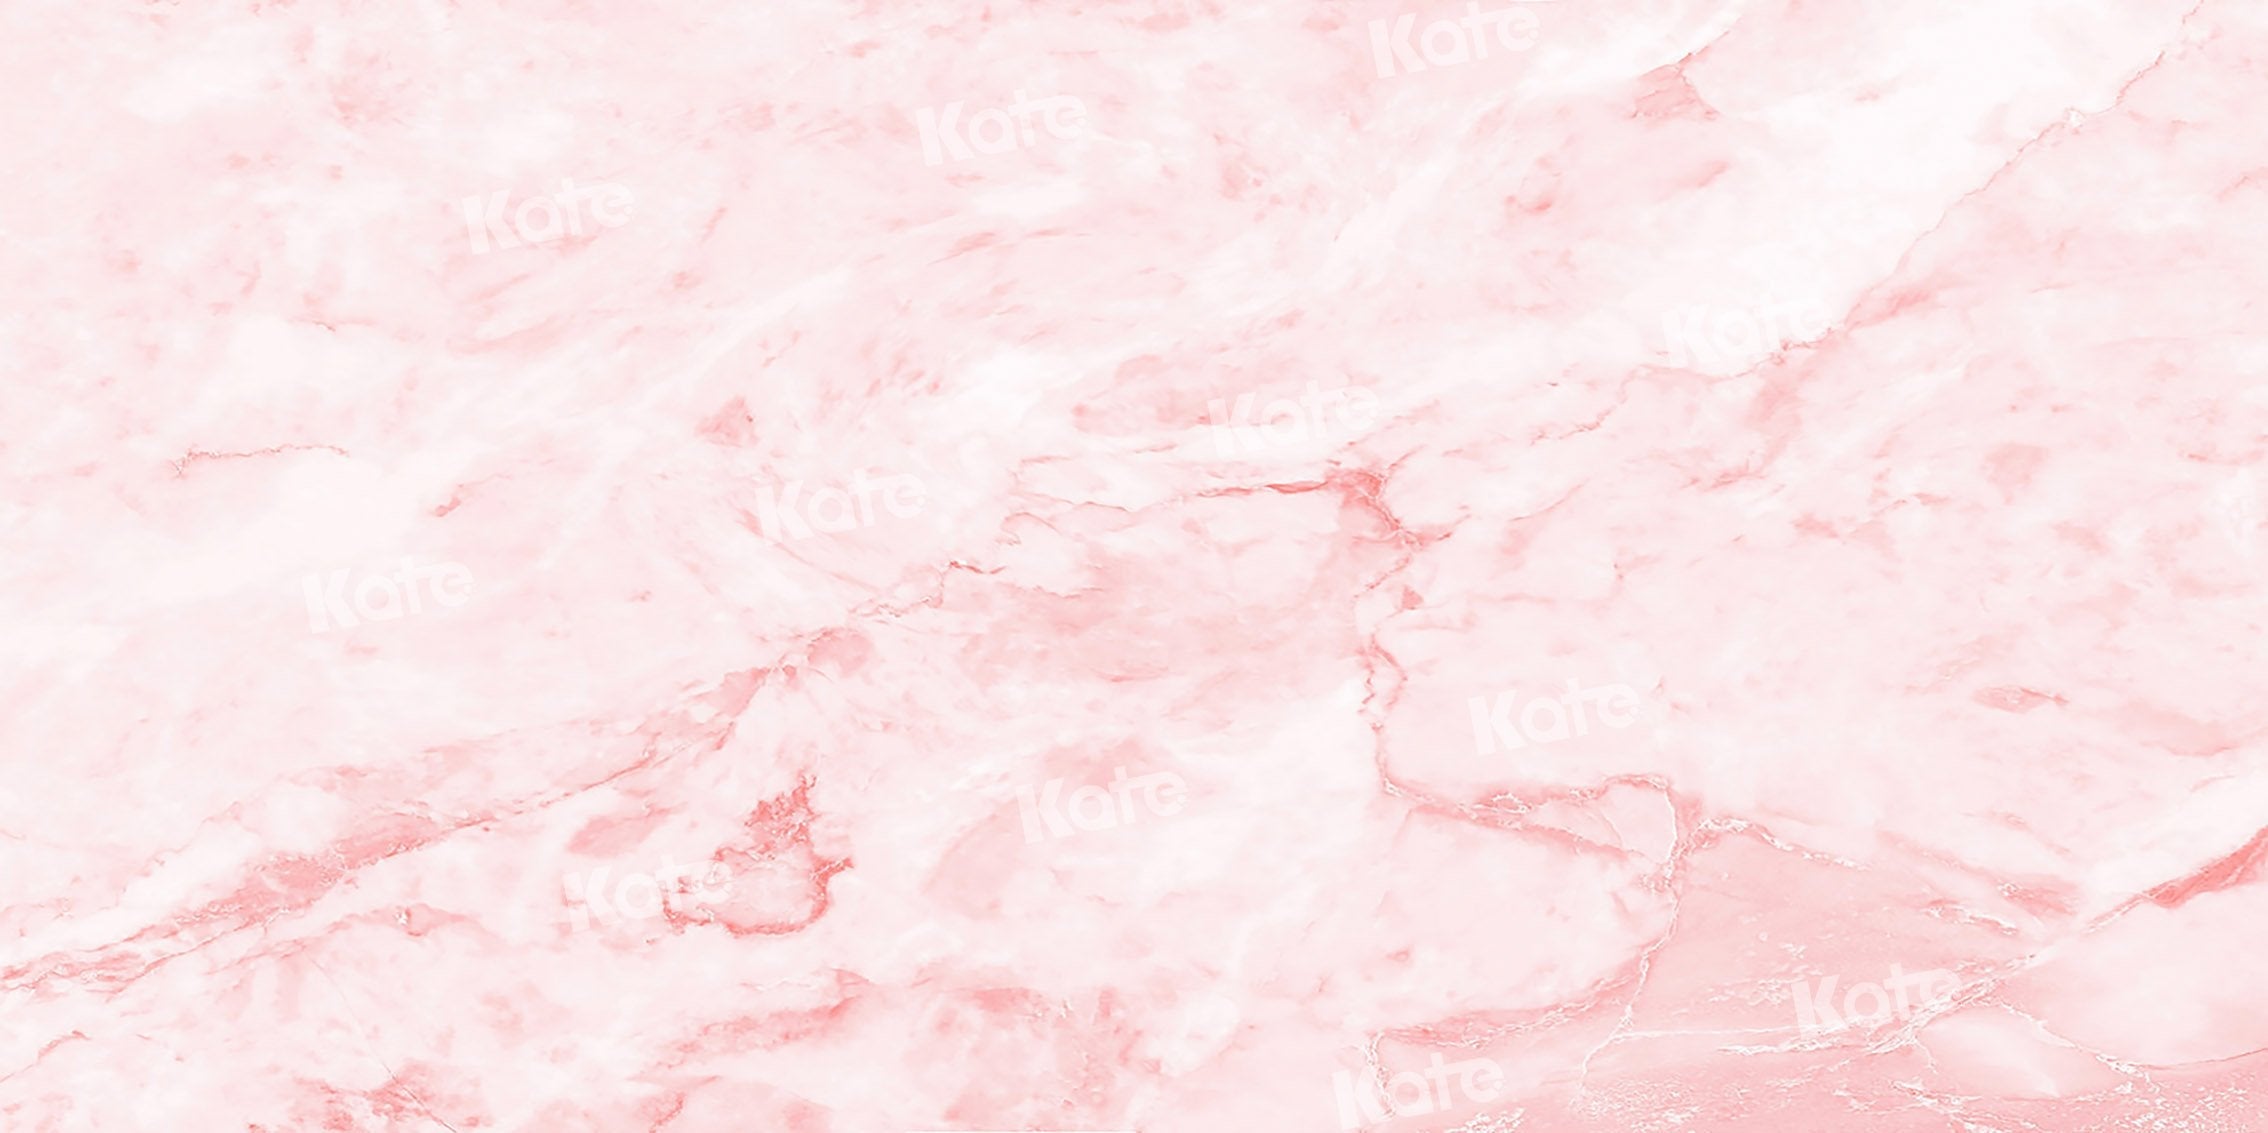 Kate Abstrakter rosa Traum Hintergrund